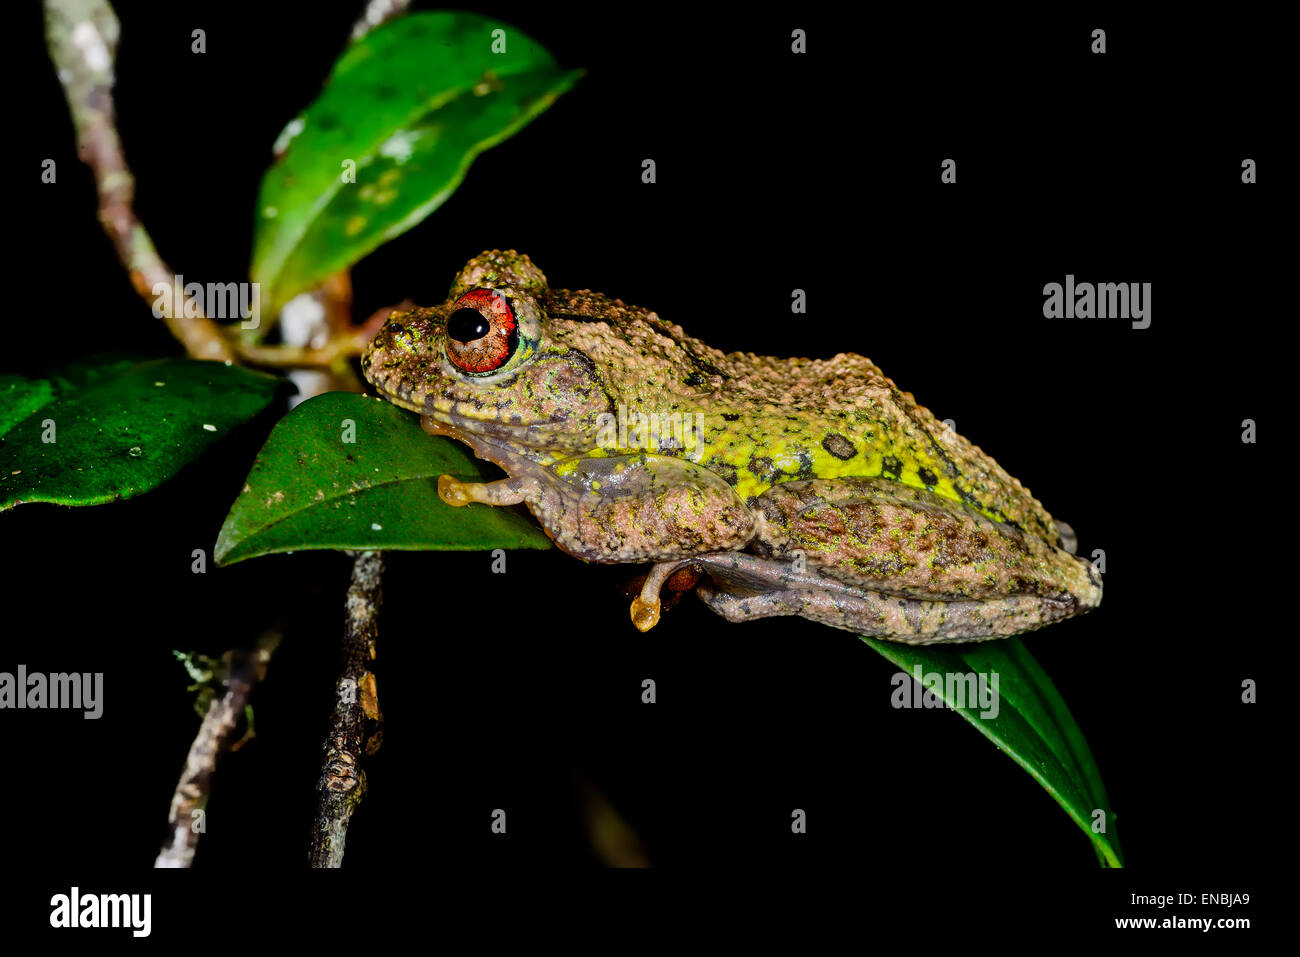 guibe's warty treefrog, andasibe, madagascar Stock Photo